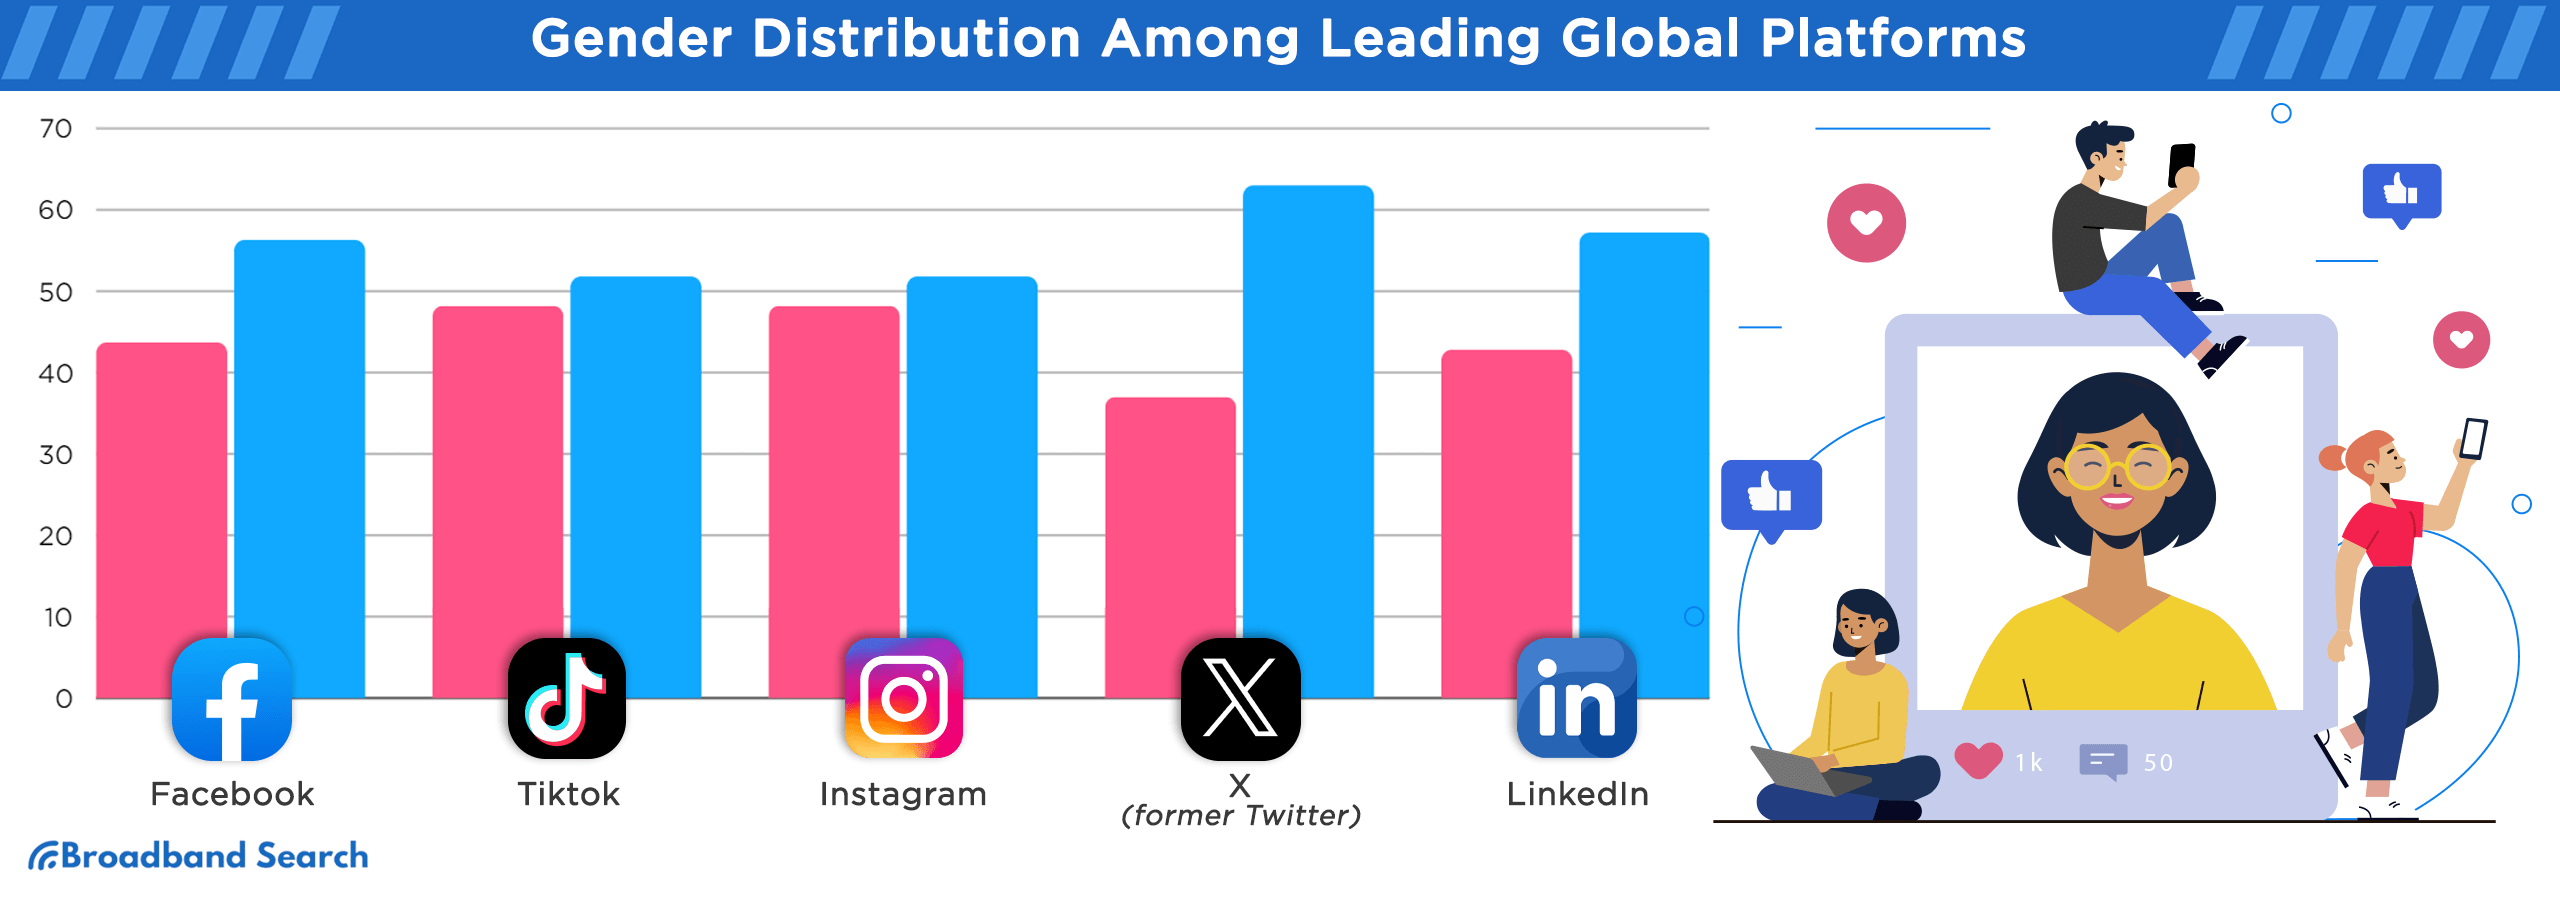 Gender Distribution among leading global platforms. Platforms included are facebook, tiktok, instagram, X, and LinkedIn